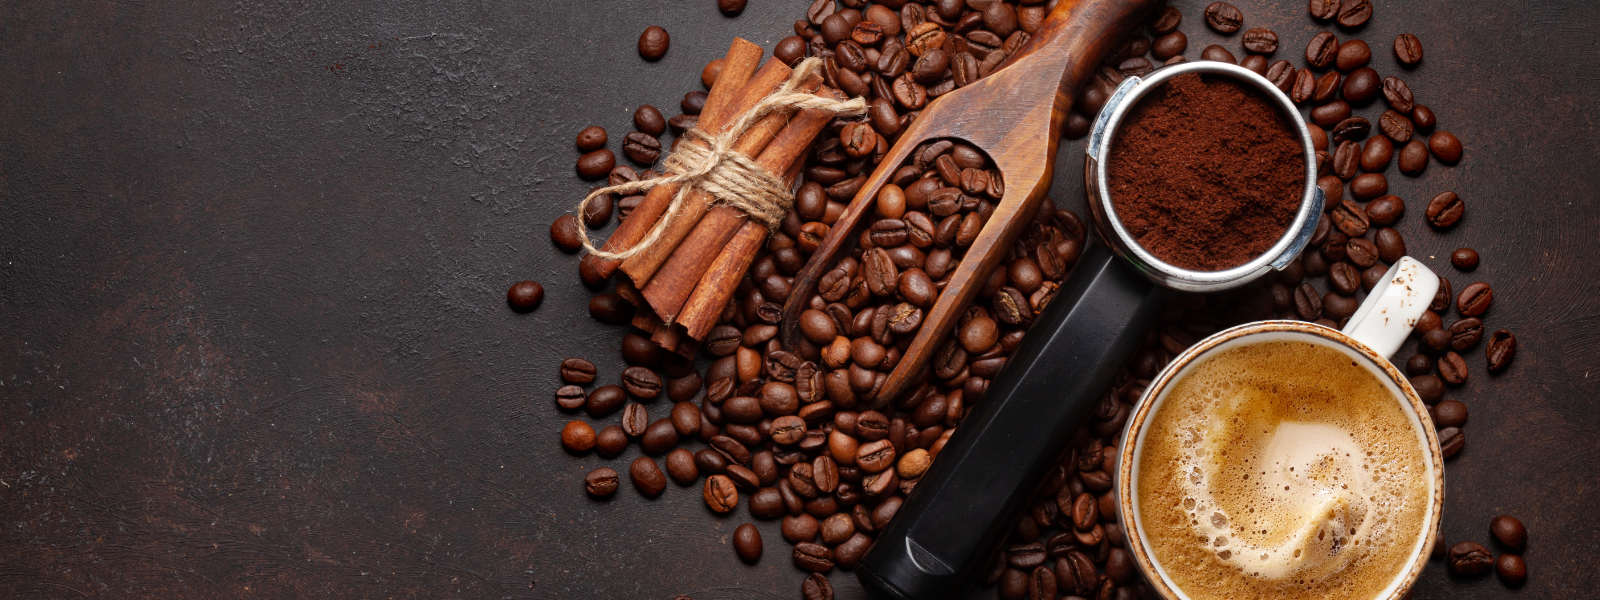 KAFO EESTI OÜ - Oleme Eesti juhtiv espressoettevõte, pakkudes kvaliteetseid kohvitooteid ja -lahendusi HORECA sektorile,...